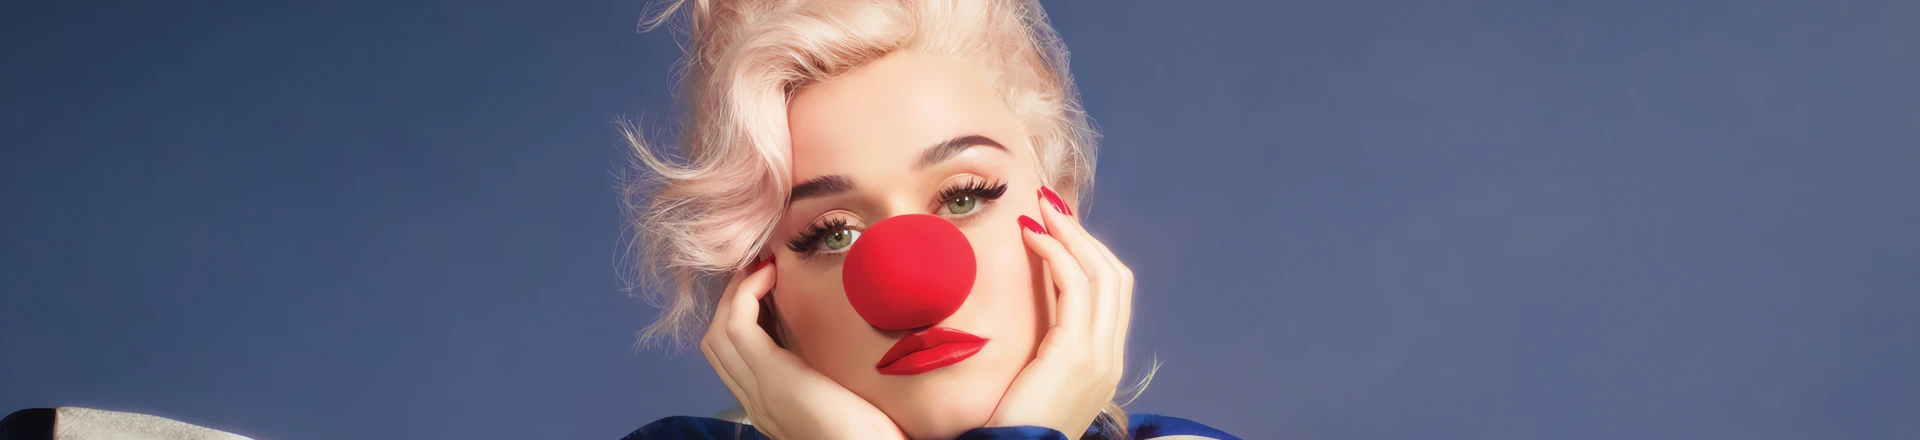 Katy Perry mówi "Smile"- nowy album wokalistki już w sprzedaży